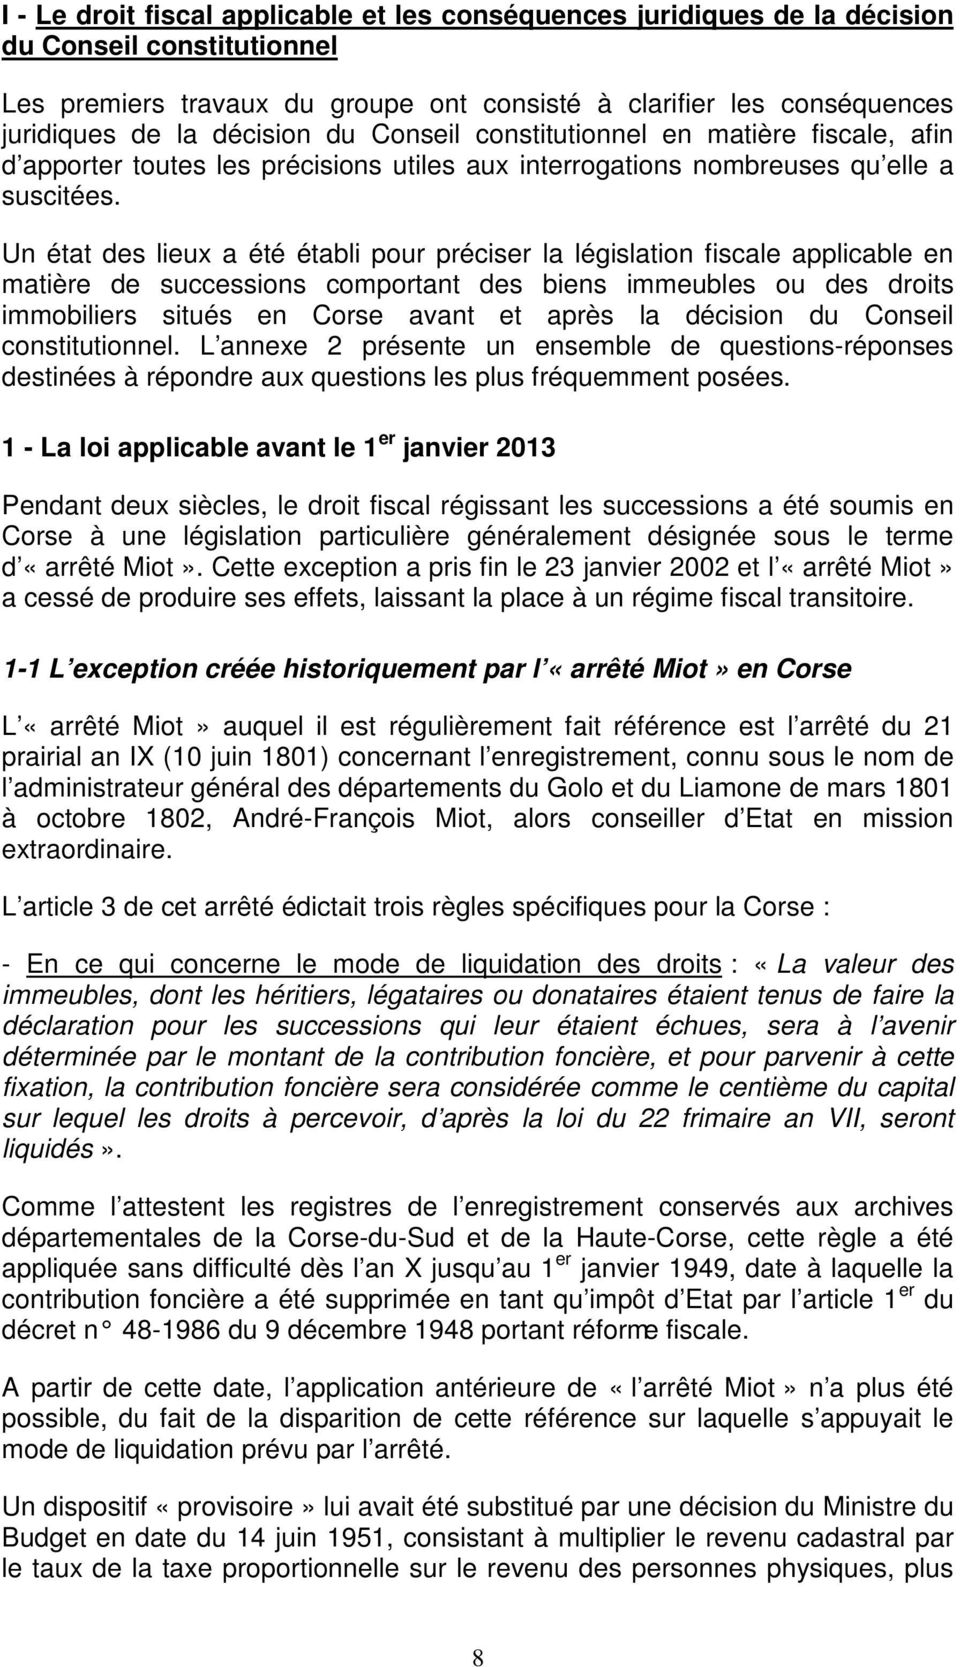 Un état des lieux a été établi pour préciser la législation fiscale applicable en matière de successions comportant des biens immeubles ou des droits immobiliers situés en Corse avant et après la